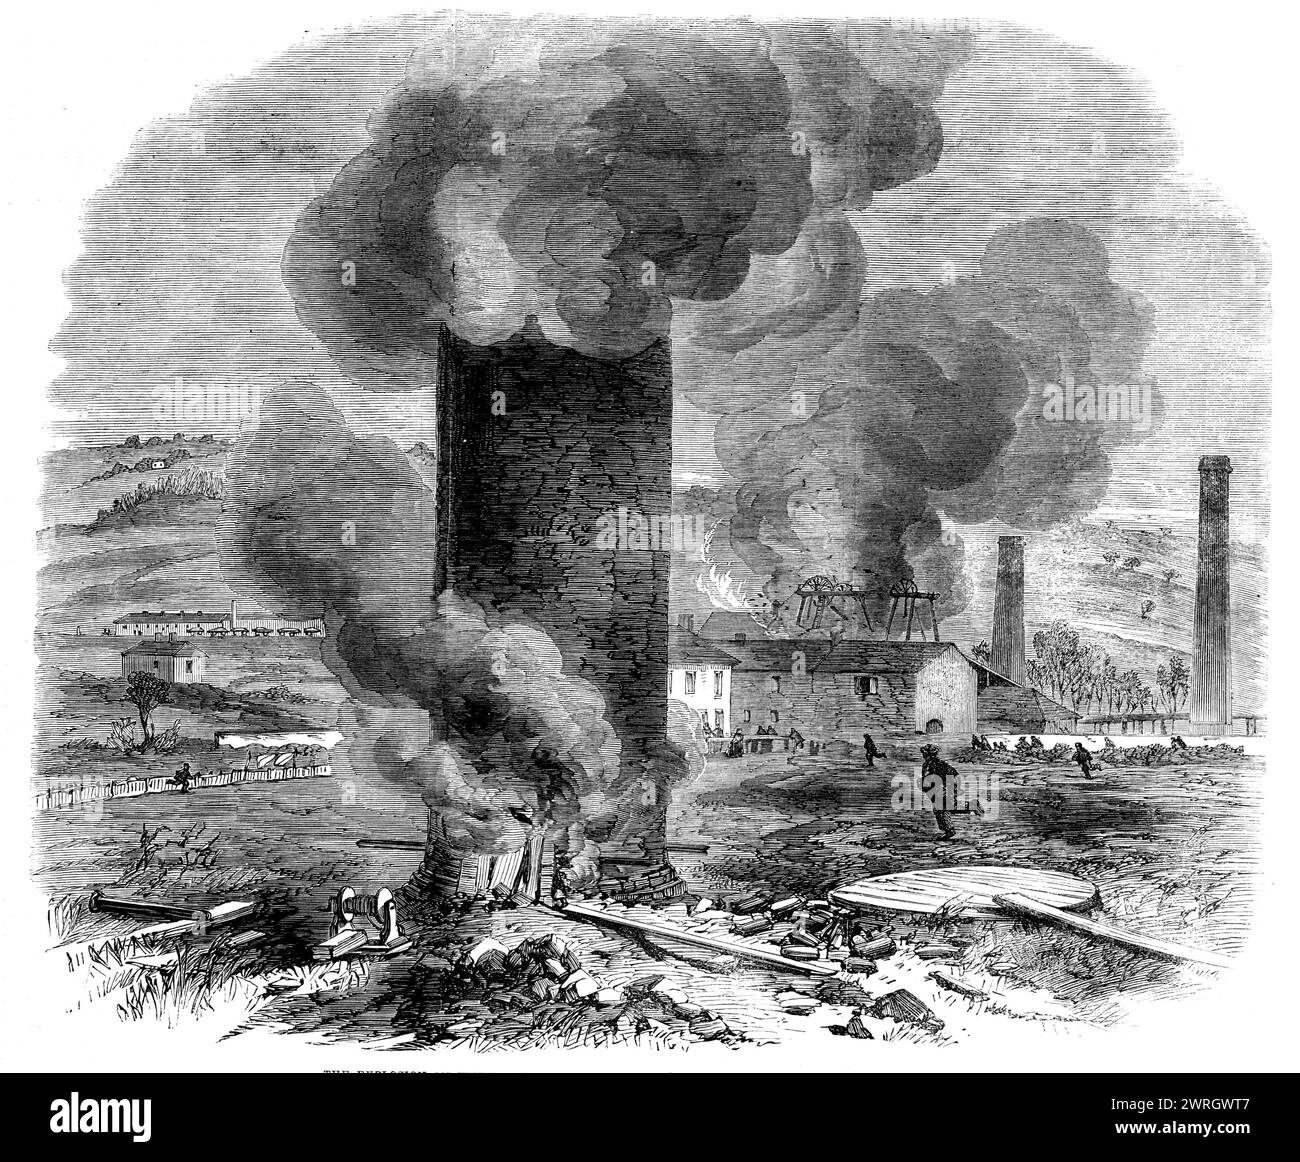 Die Explosion am Mittwoch in Edmund's Main Colliery, Barnsley, 1862. Sofort sprang aus der Kuppel eine dichte Säule schwarzen Rauchs, wie ein gigantischer Turm, in den Himmel. Seine Höhe wird auf mehr als 100 Fuß geschätzt und blieb für einige Momente so klar und scharf wie der Kirchturm definiert. Die Explosion war so heftig, dass sie nicht nur die Strömung der Luft zurückzwang, die in den abfallenden Schächten hinabstieg, sondern auch die Luft, die in den abgeflachten Schacht hinunterging. aber sie erbrachen auch eine riesige Menge Rauch, die von einer Explosion getragen wurde, die die Dielen über den Schacht wegschleuderte, und einige von ihnen Stockfoto